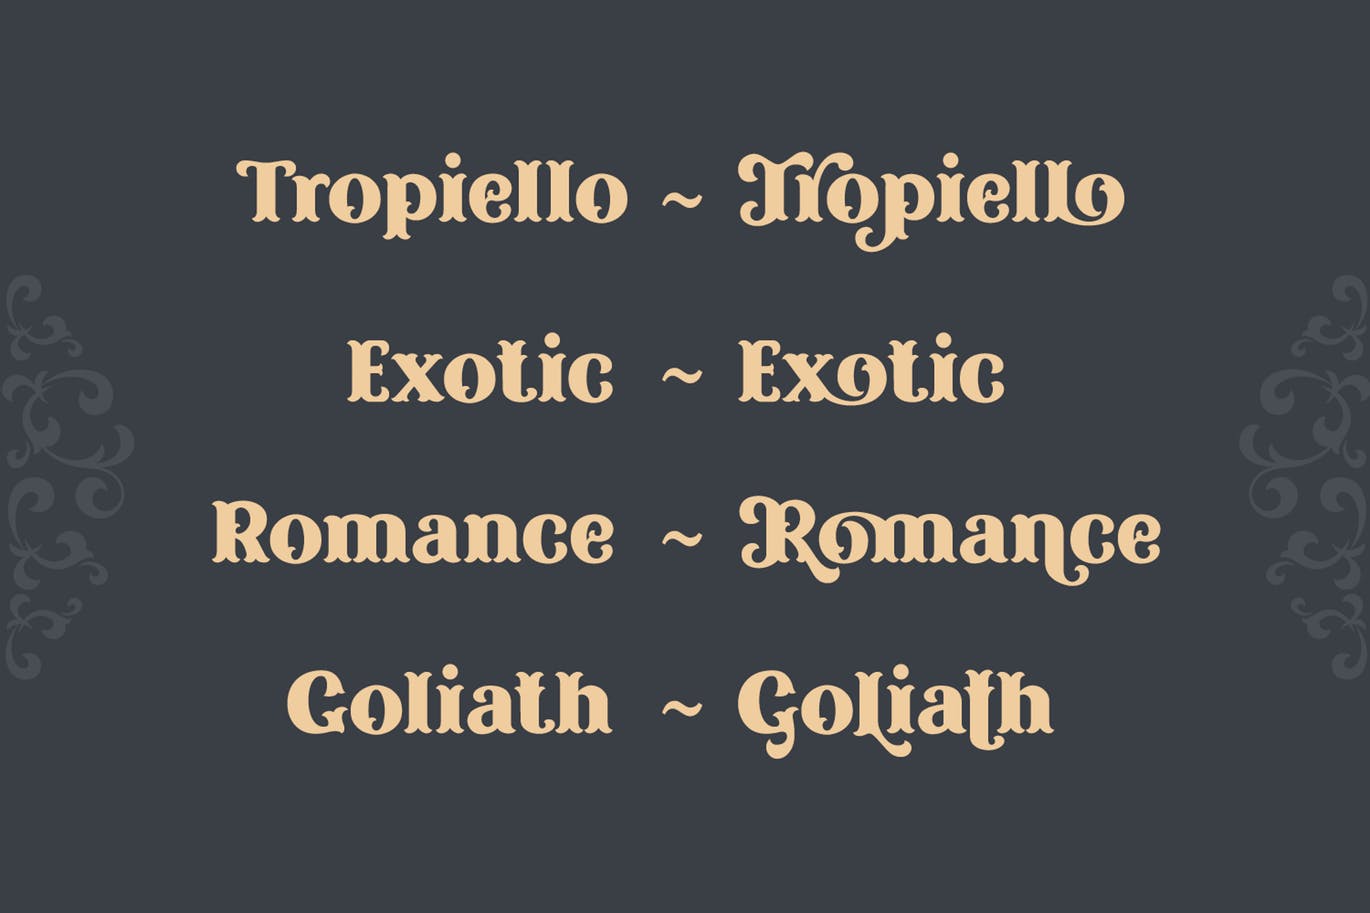 复古风格精美英文衬线装饰字体第一素材精选下载 Tropiello Font插图(4)